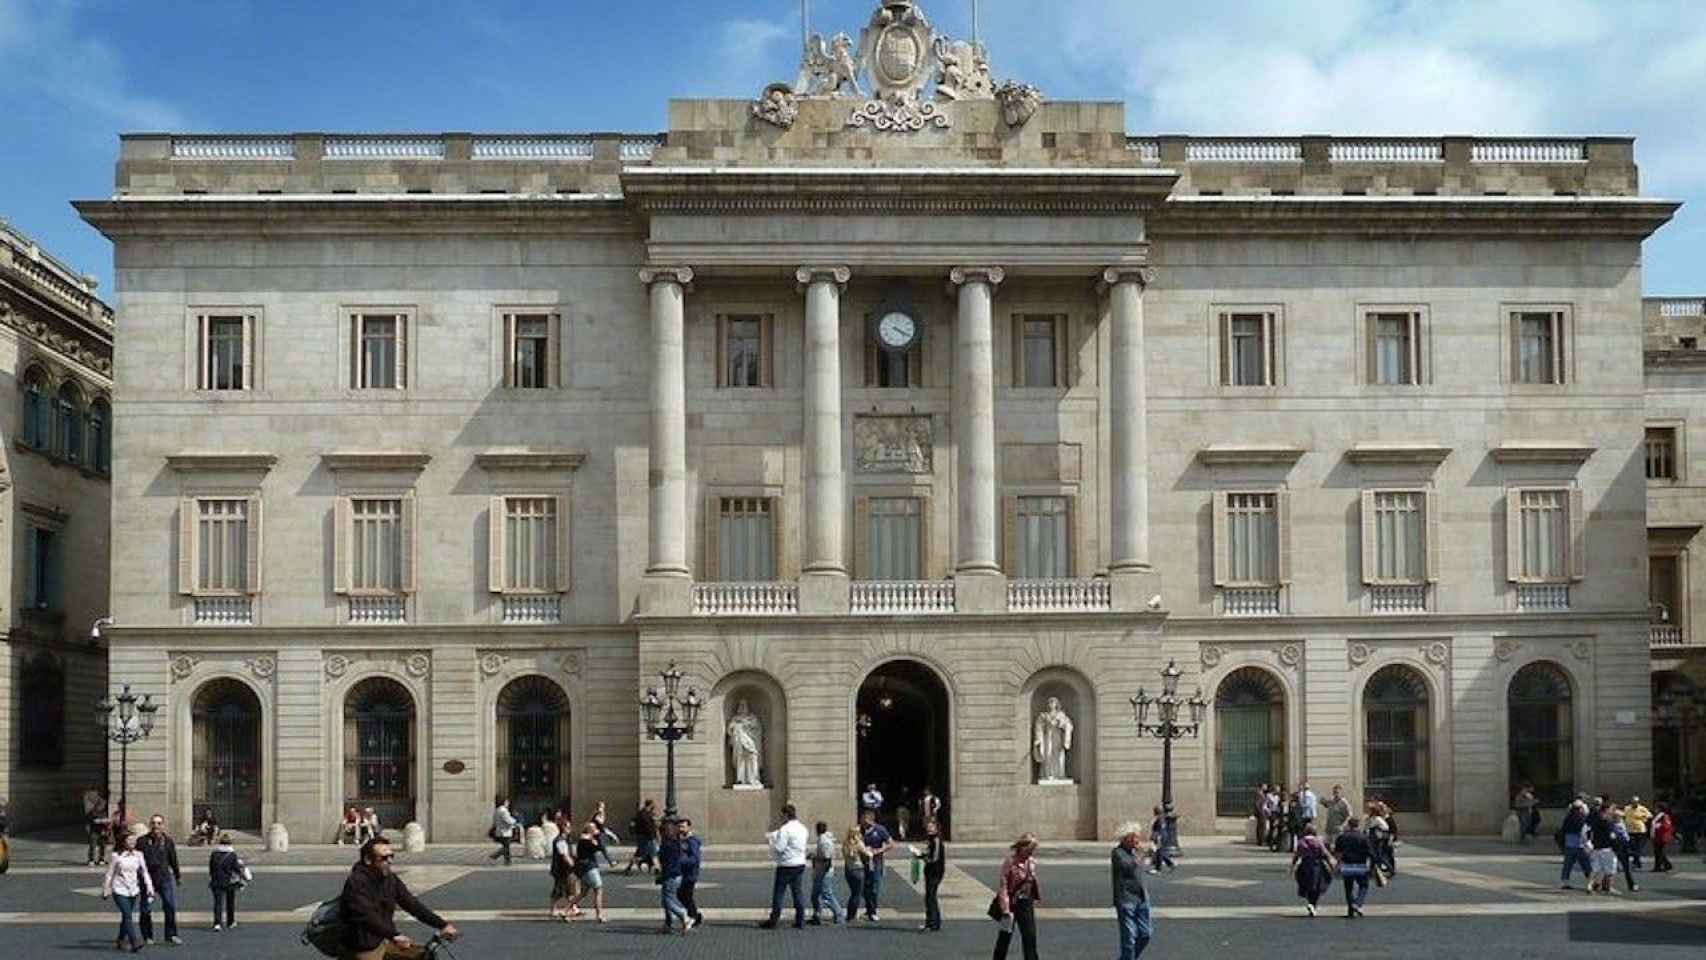 Imagen del Ayuntamiento de Barcelona y la plaza Sant Jaume